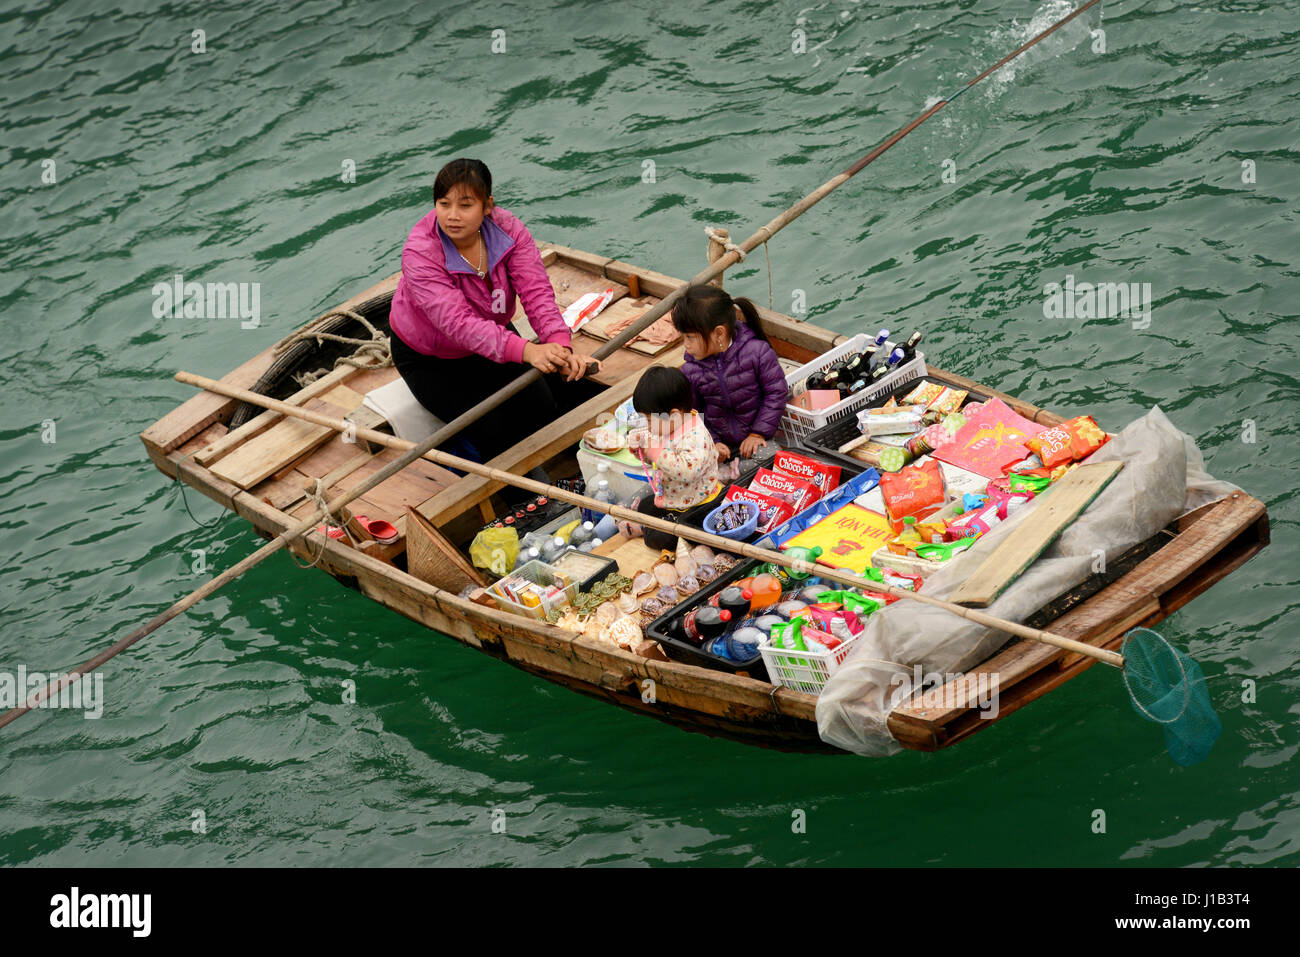 Fisherman's famiglie nella baia di Halong contribuire al reddito familiare con la vendita di spuntini e negozio di souvenir al passaggio di imbarcazioni turistiche. Foto Stock